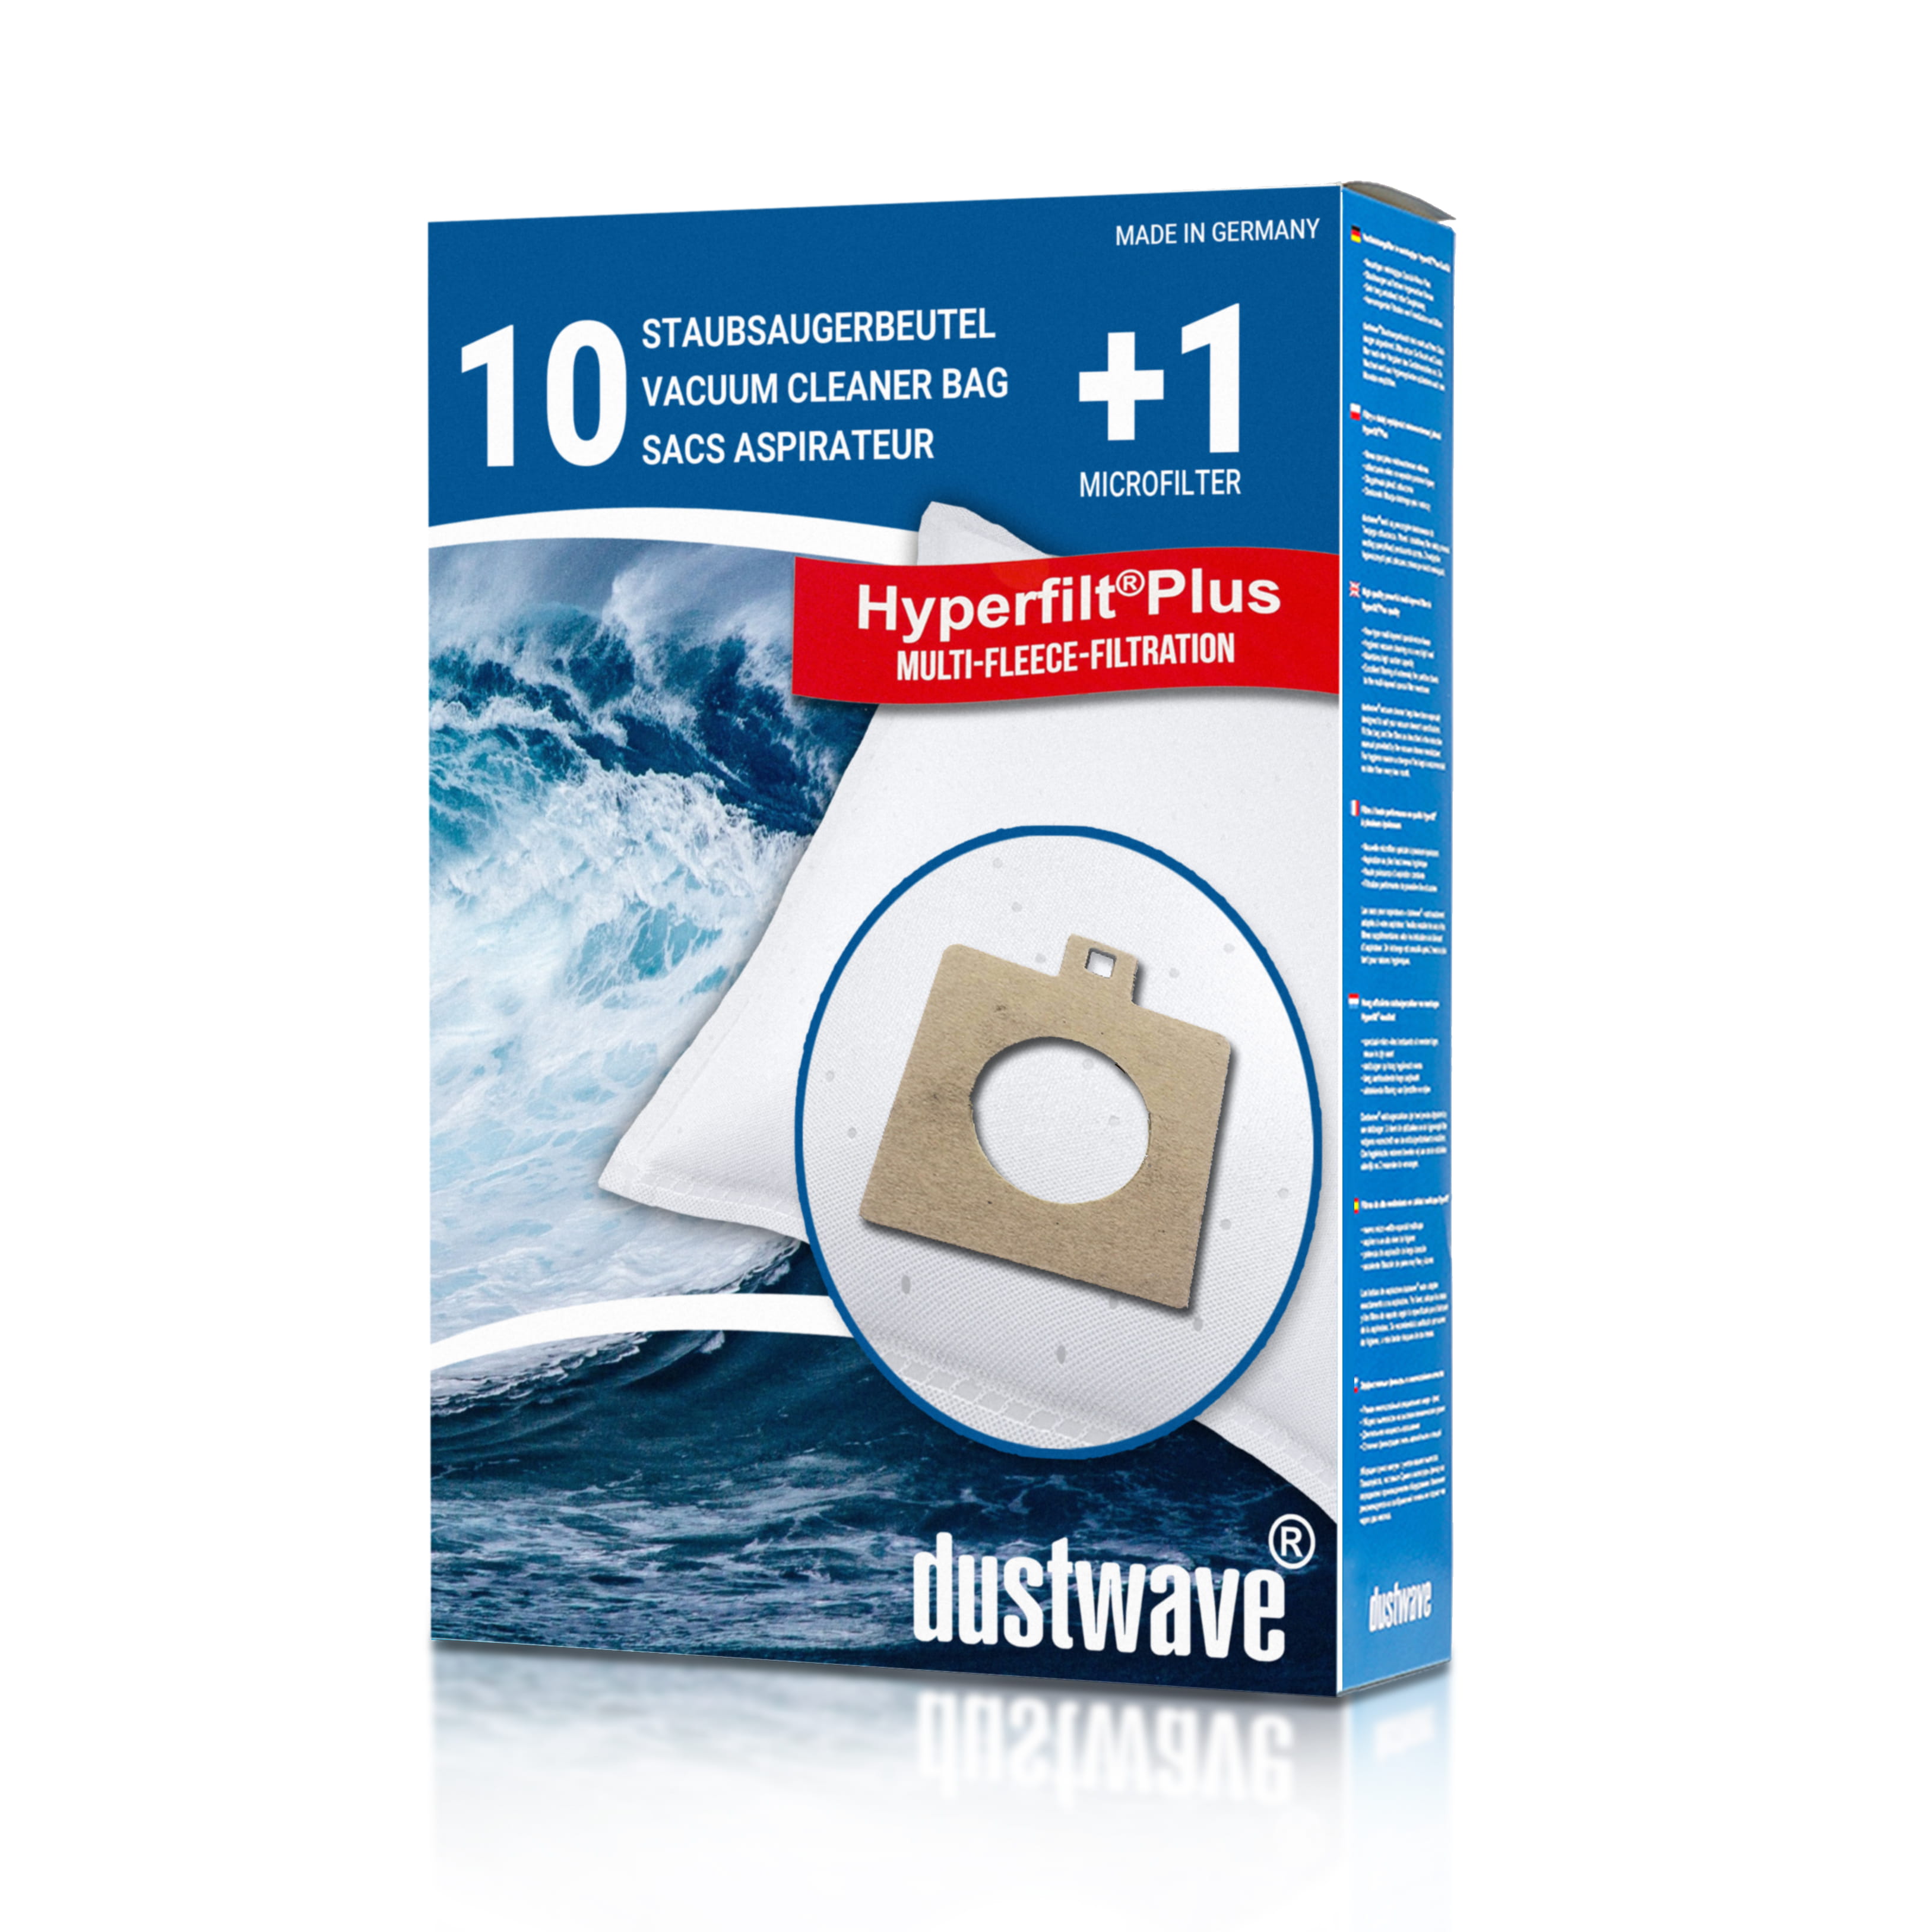 Dustwave® 10 Staubsaugerbeutel für Progress PC 2102, PC 2114… - hocheffizient mit Hygieneverschluss - Made in Germany